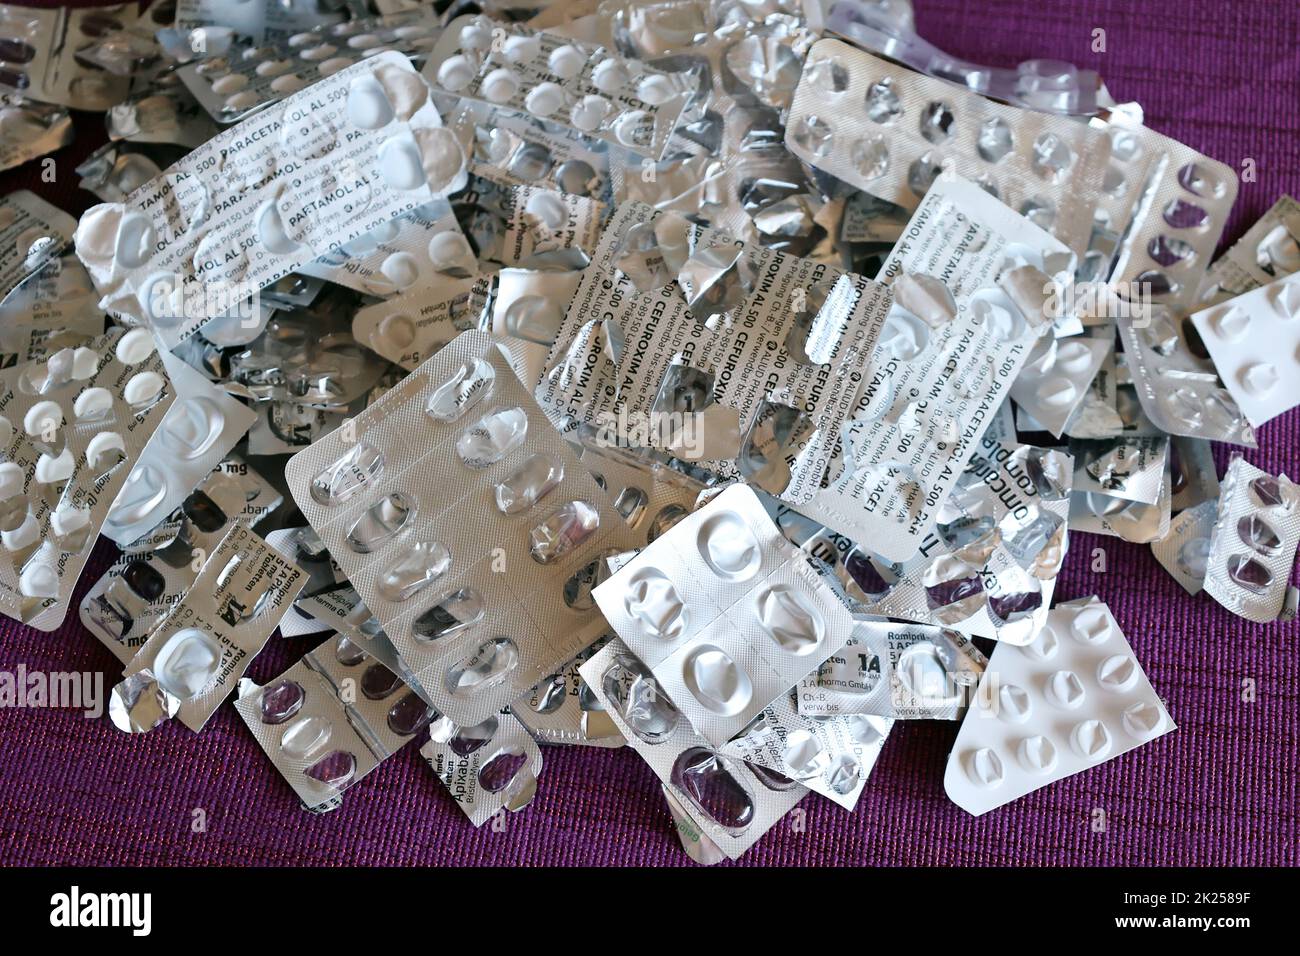 Medikamentenmißbrauch, Medikamentensucht uind Verpackungsmüll von Medizinprodukten Stock Photo